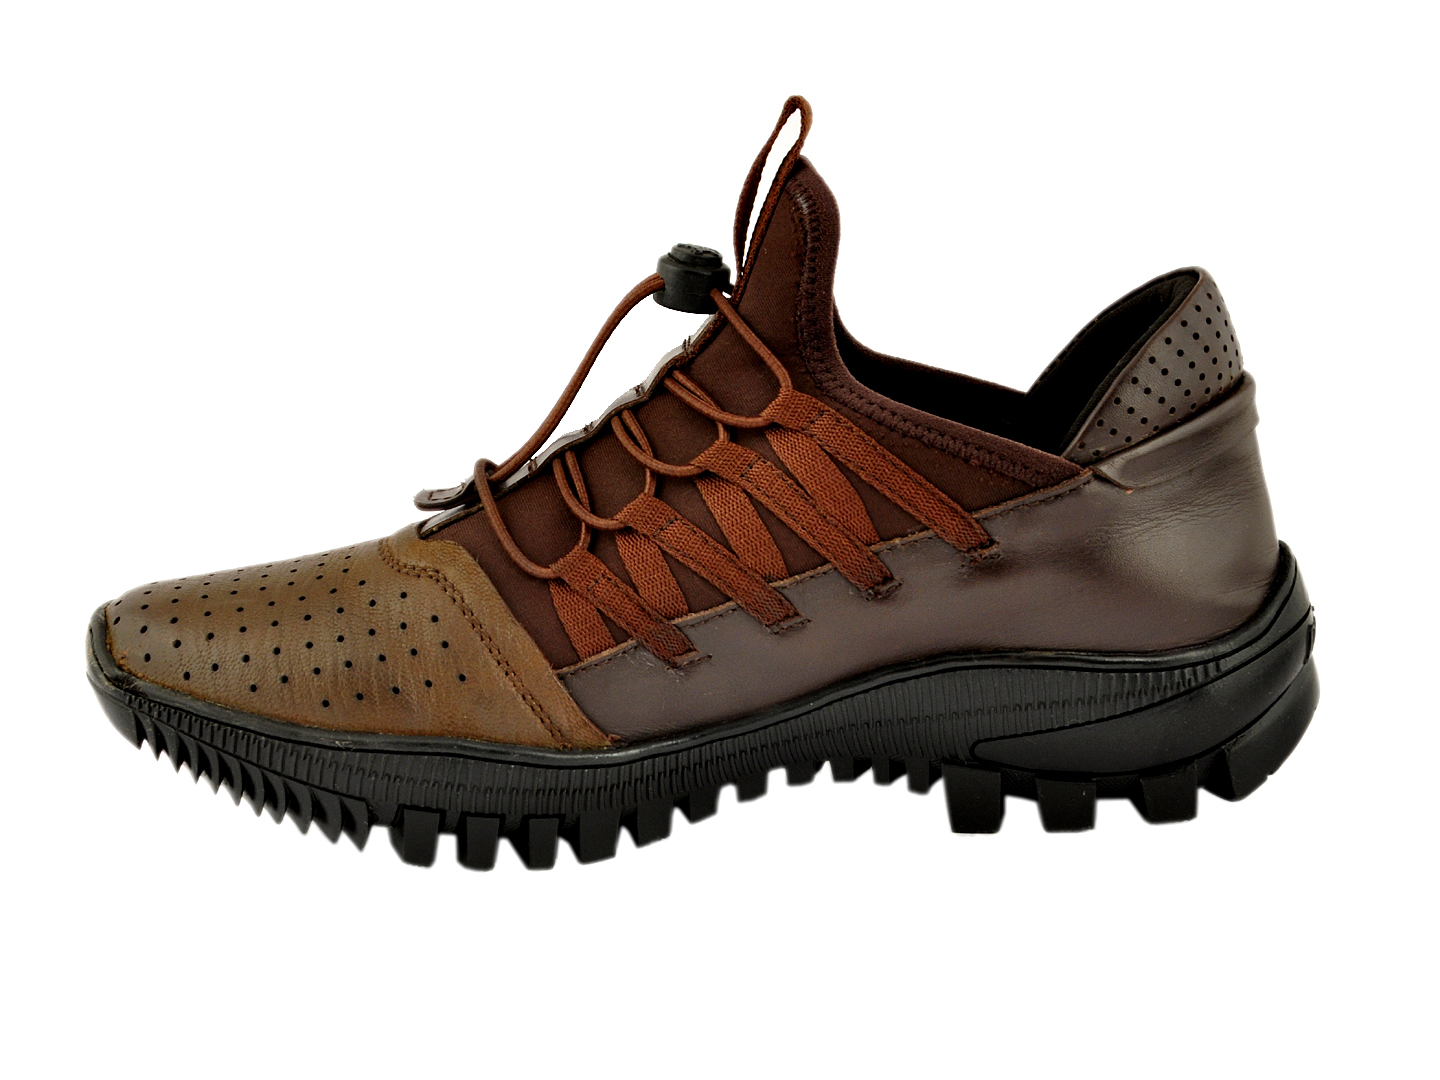 Rhinoland  BK eather shoes for men